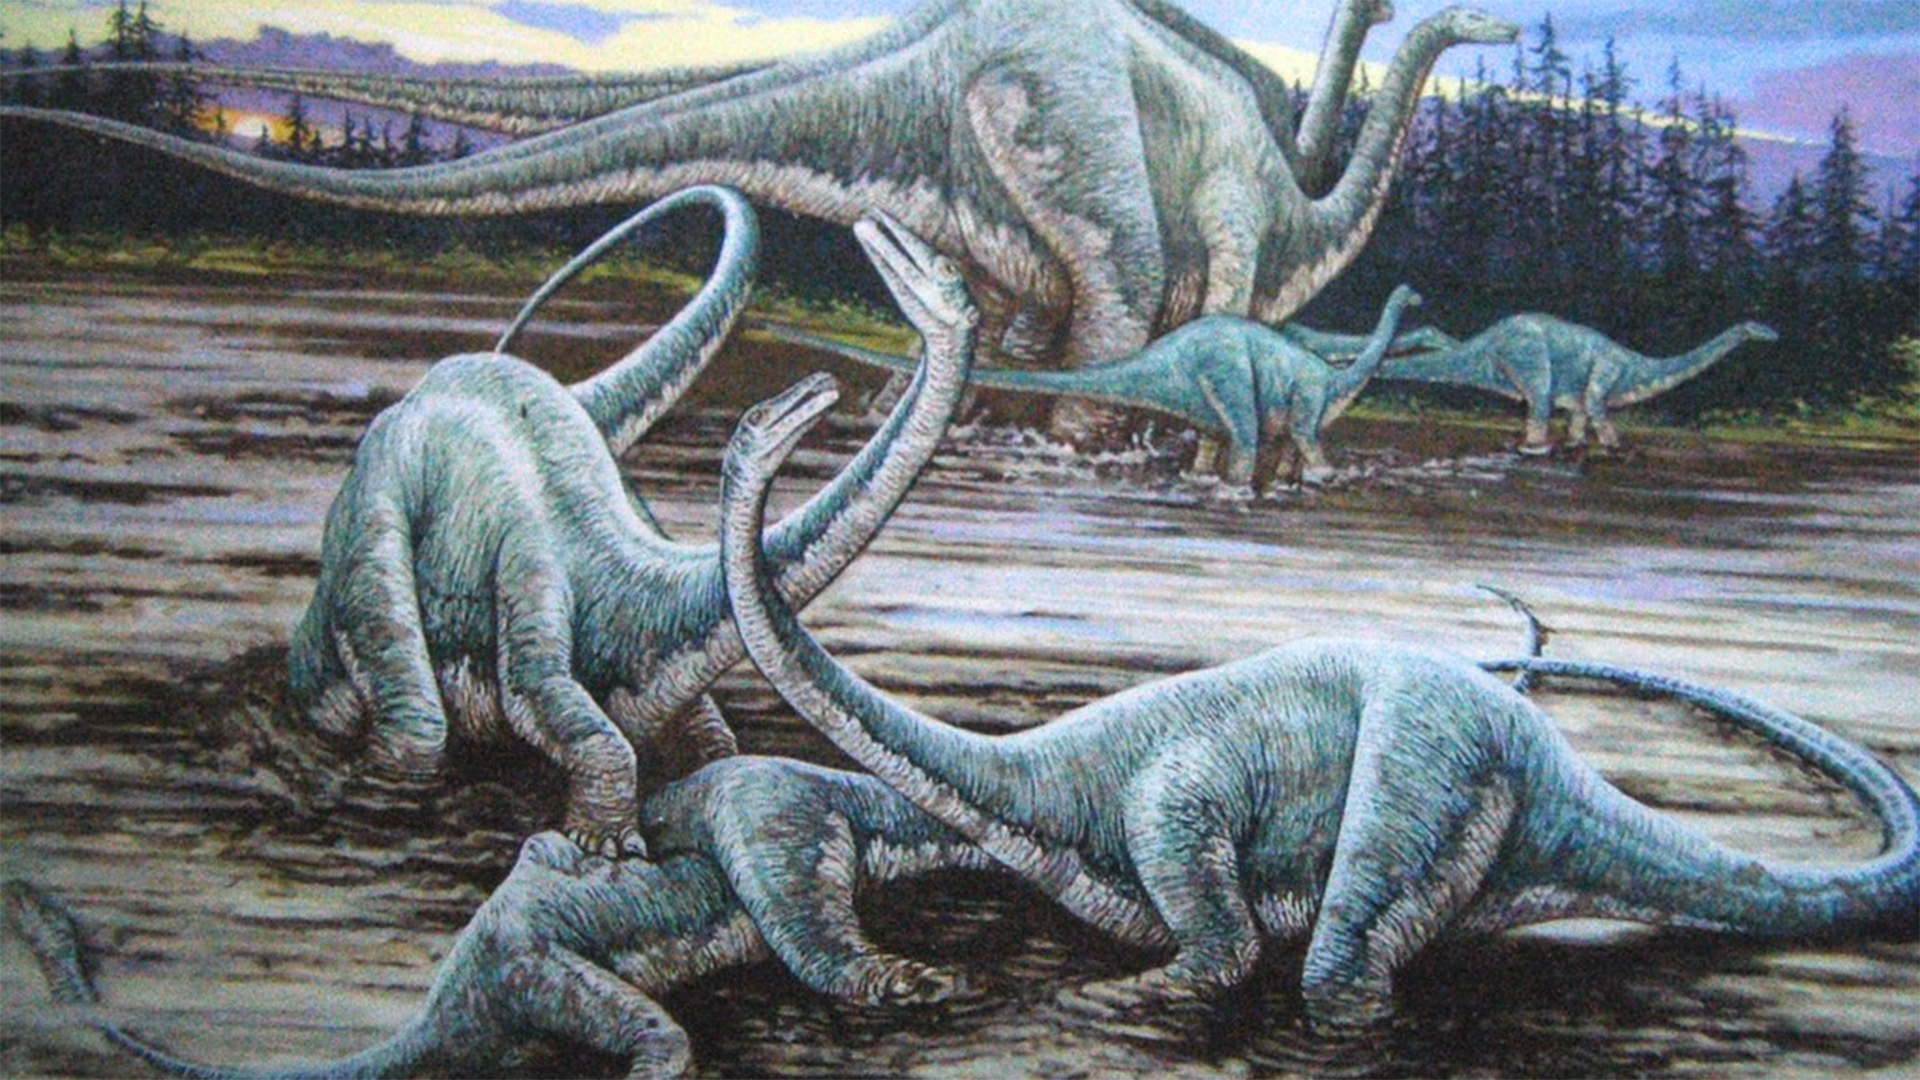 Sauropod dinosaurs